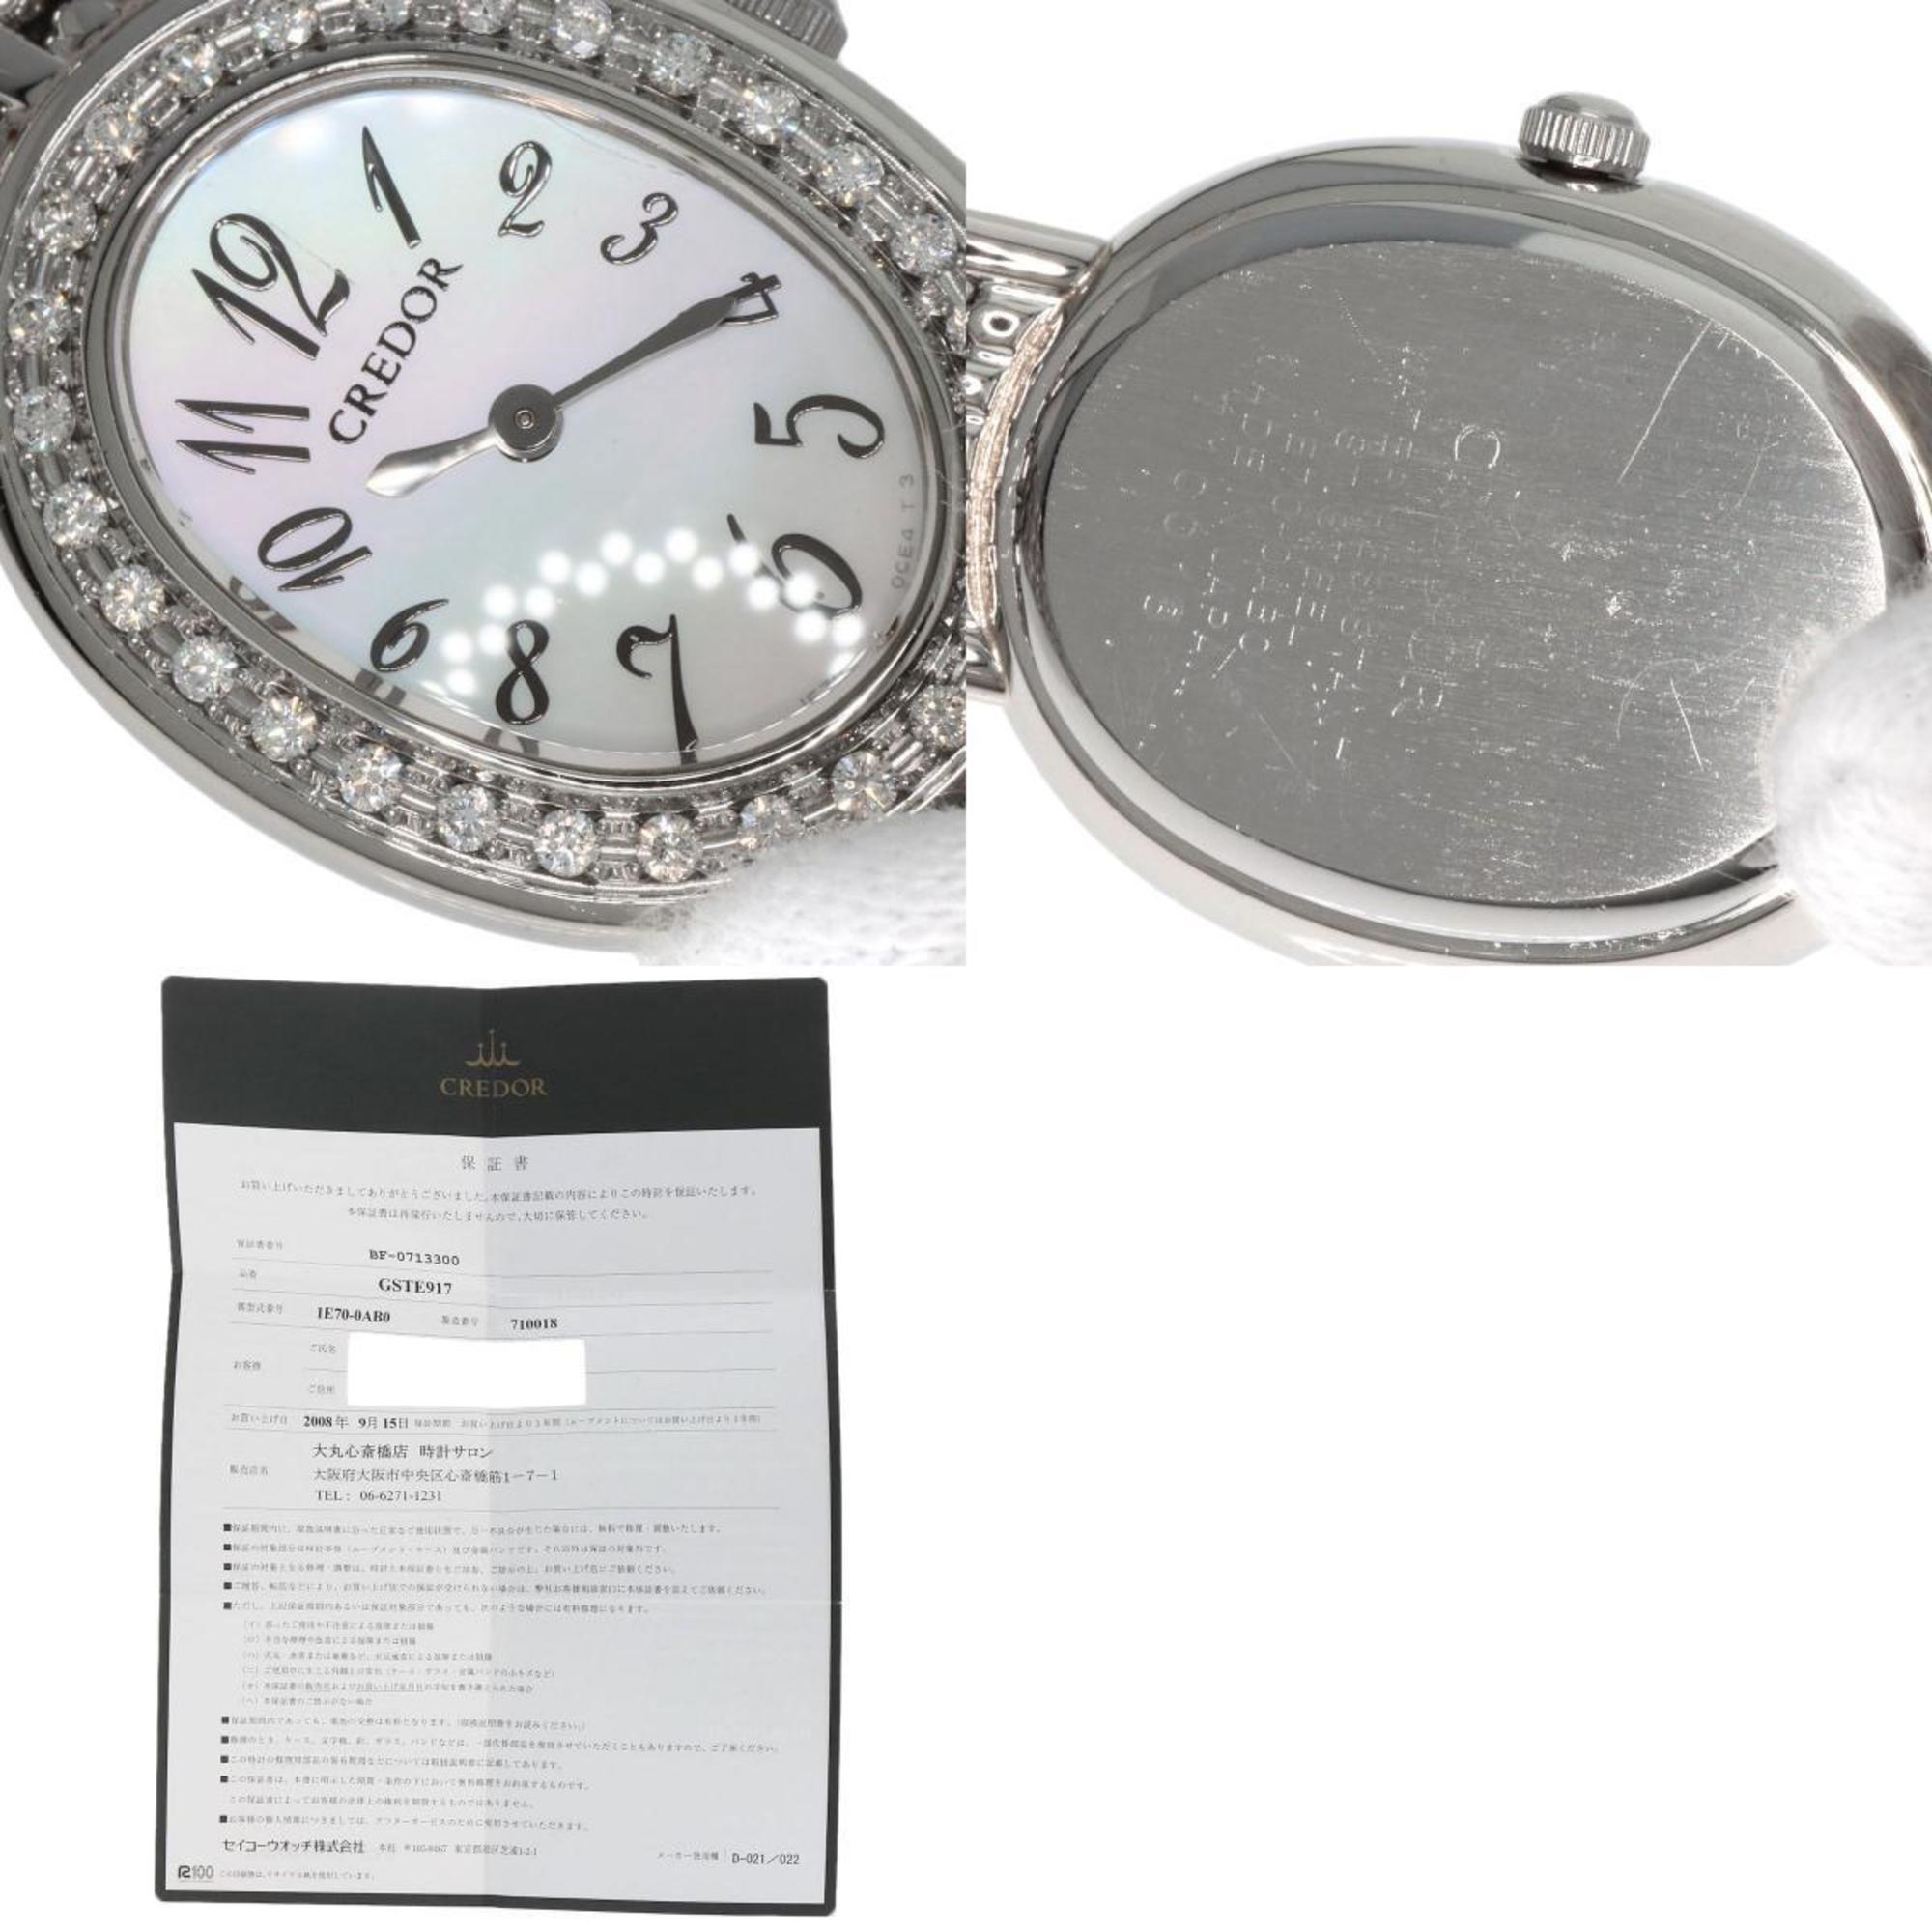 Seiko GSTE917 1E70-0AB0 Credor Signo Bezel Diamond Watch Stainless Steel/SS Ladies SEIKO